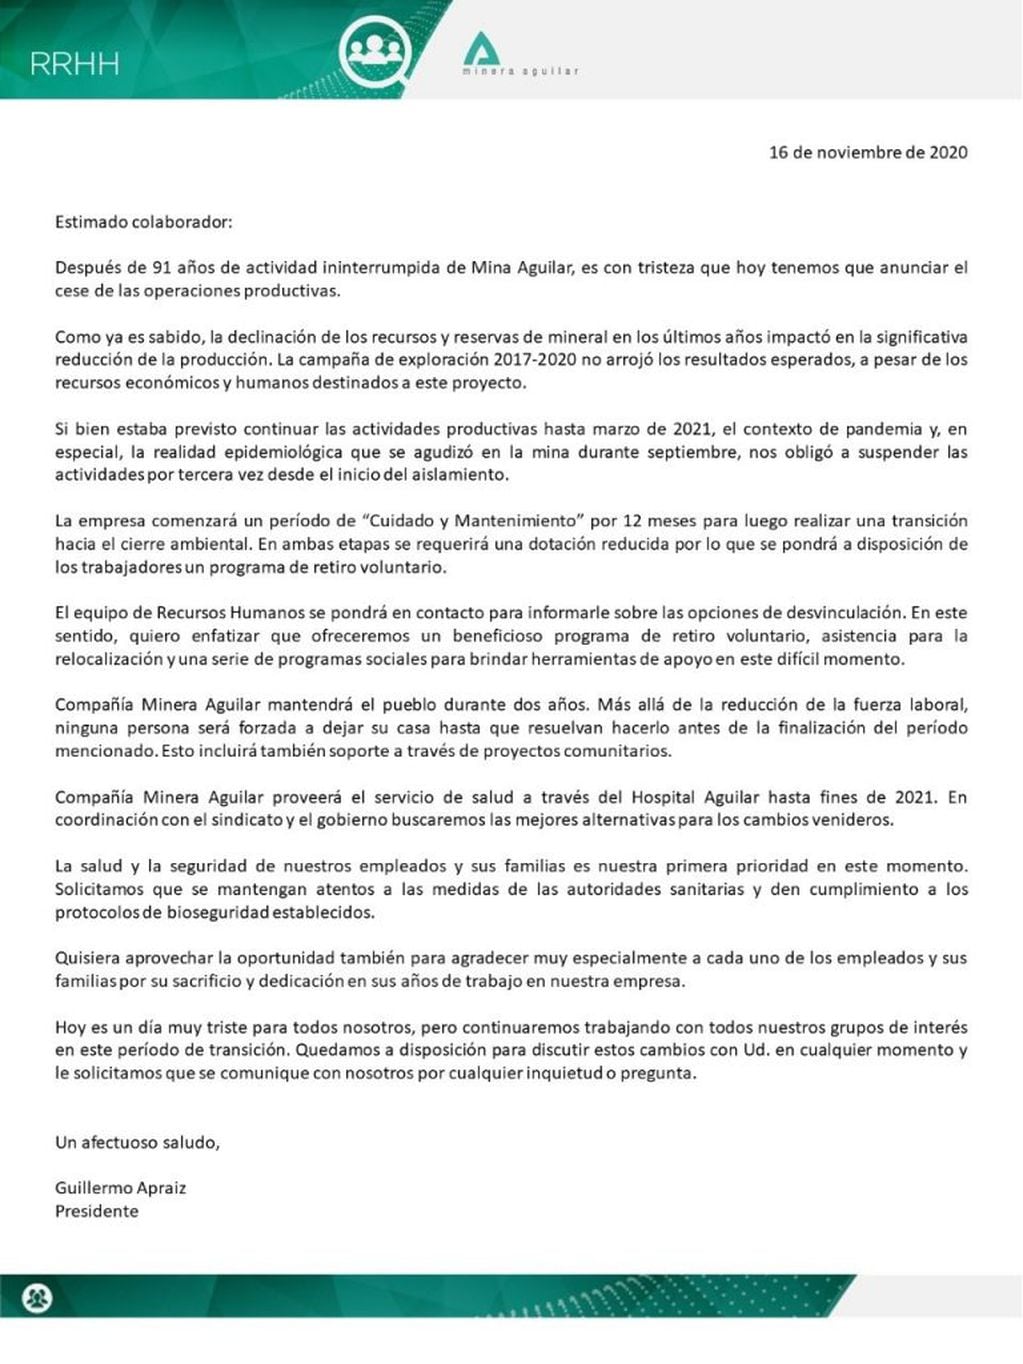 El texto firmado por el presidente de la compañía, anunciando el adelantamiento del cierre de la mina El Aguilar.